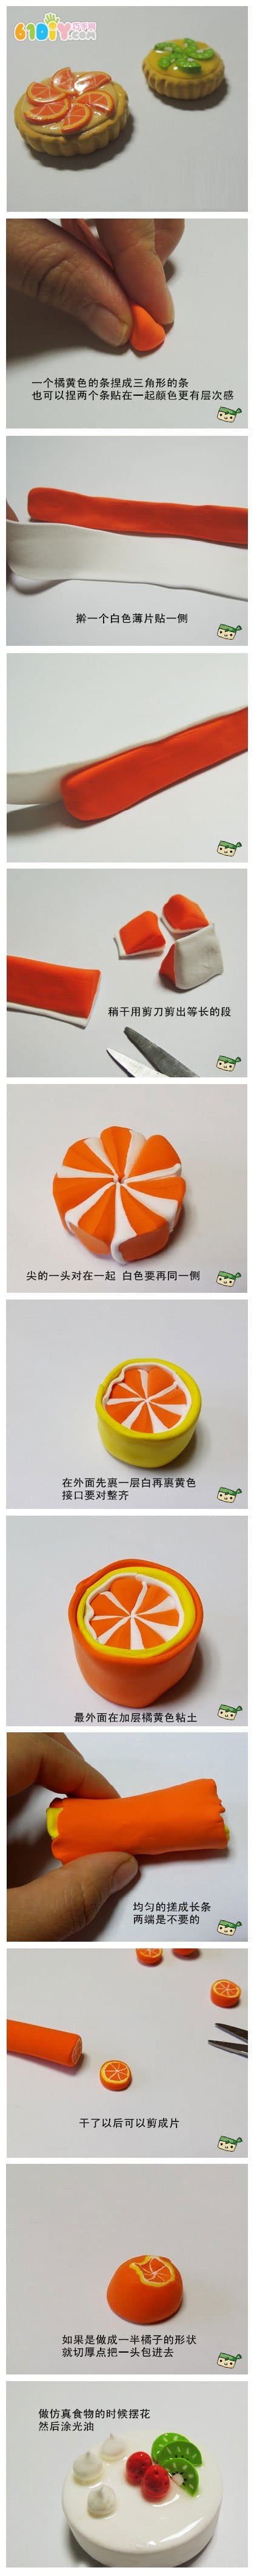 儿童彩泥教程 粘土制作橙子